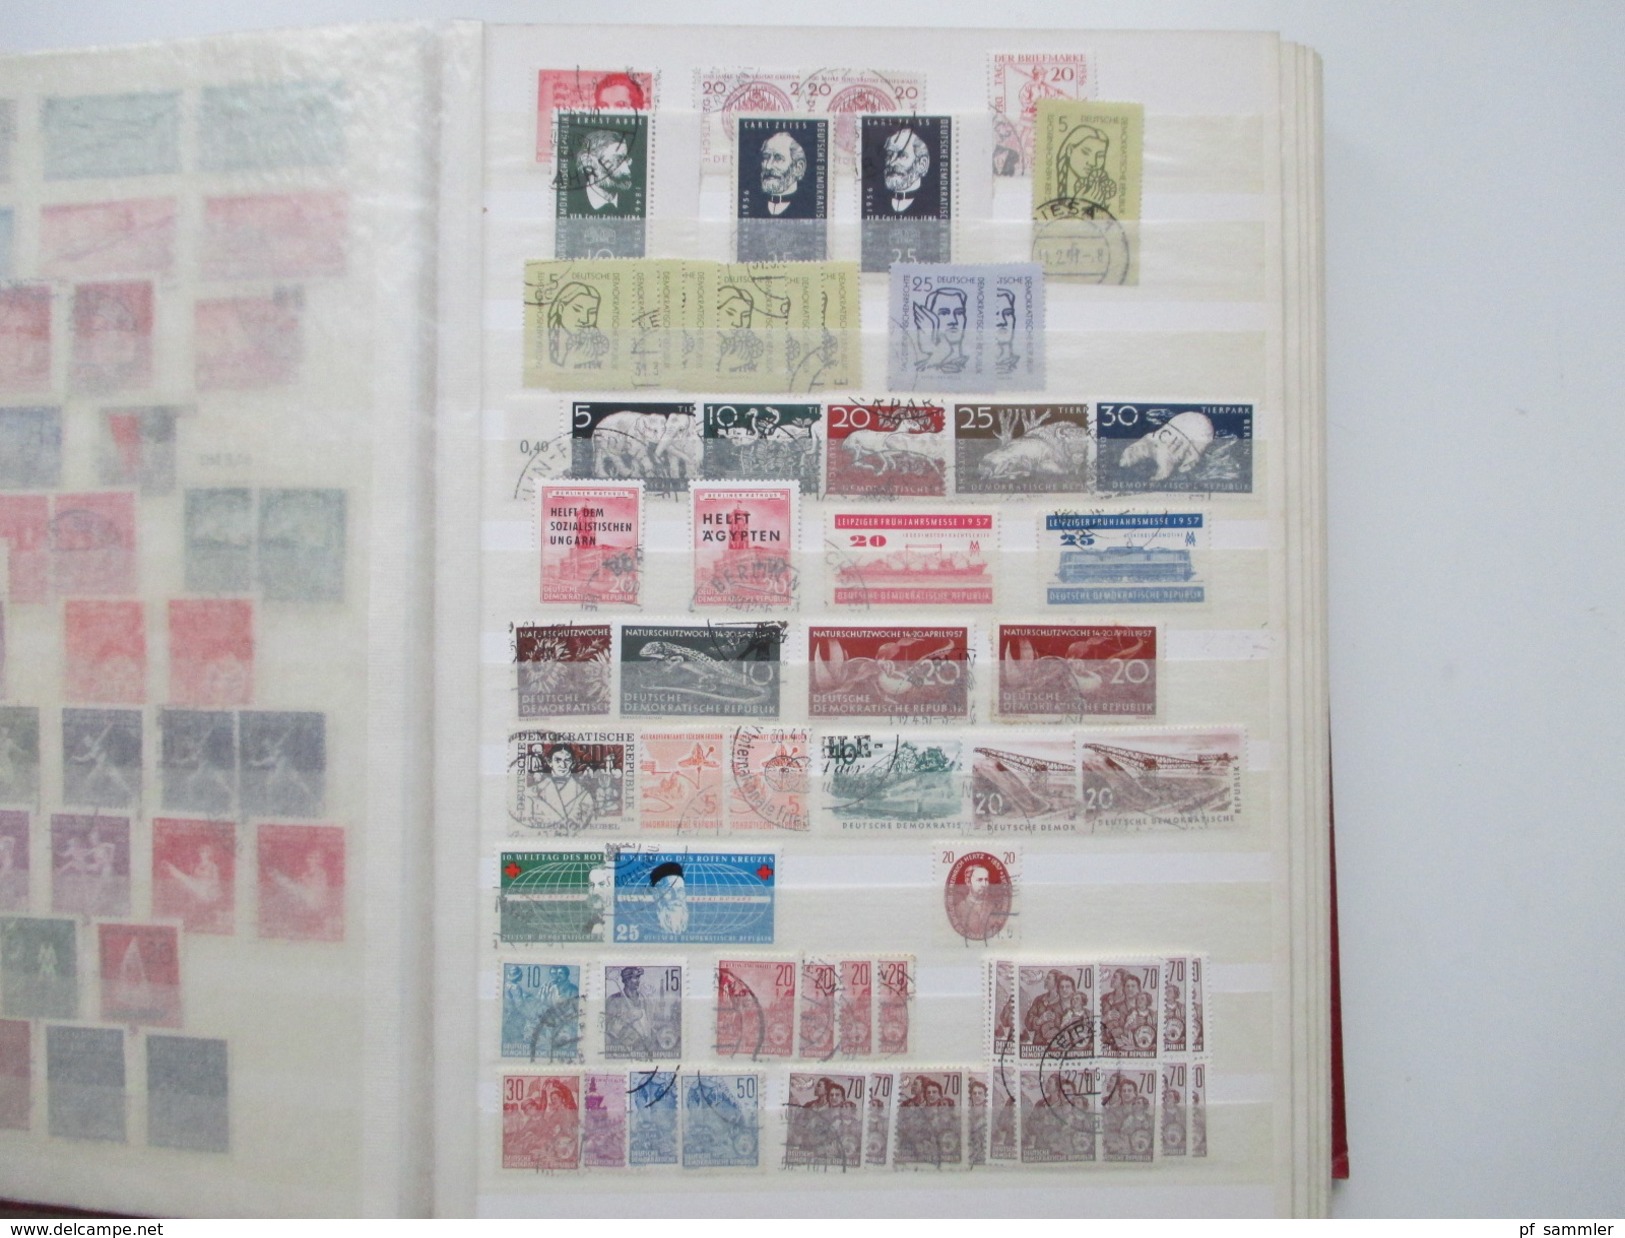 DDR Sammlung 1949 - 88 gestempelt mit vielen Marken und Sätze! Etliche Tagesstempel! Hoher Katalogwert!